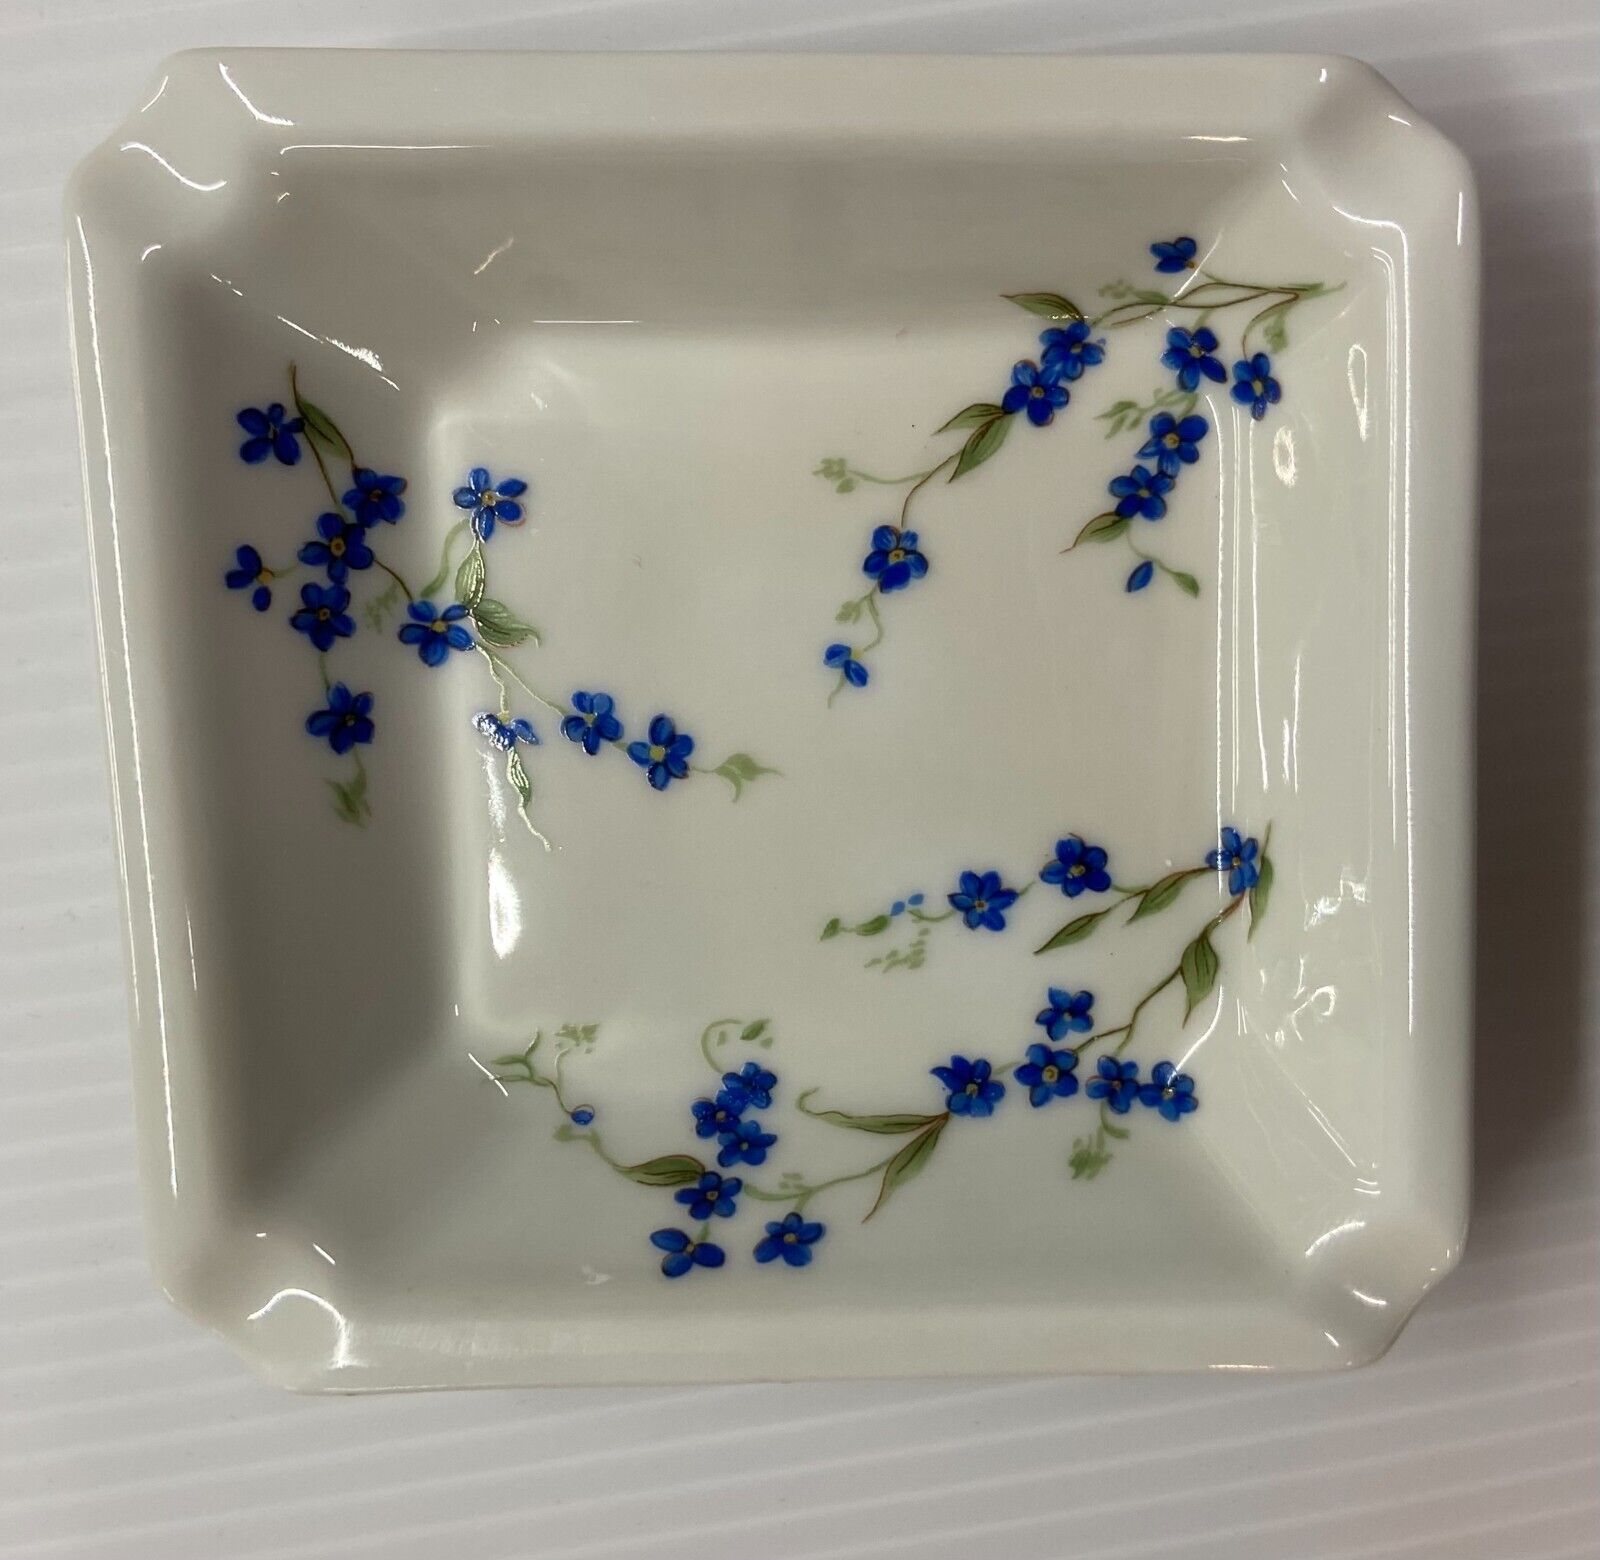 Vintage Limoges Porcelain Trinket Dish / Ashtray Blue Flowers Made in France